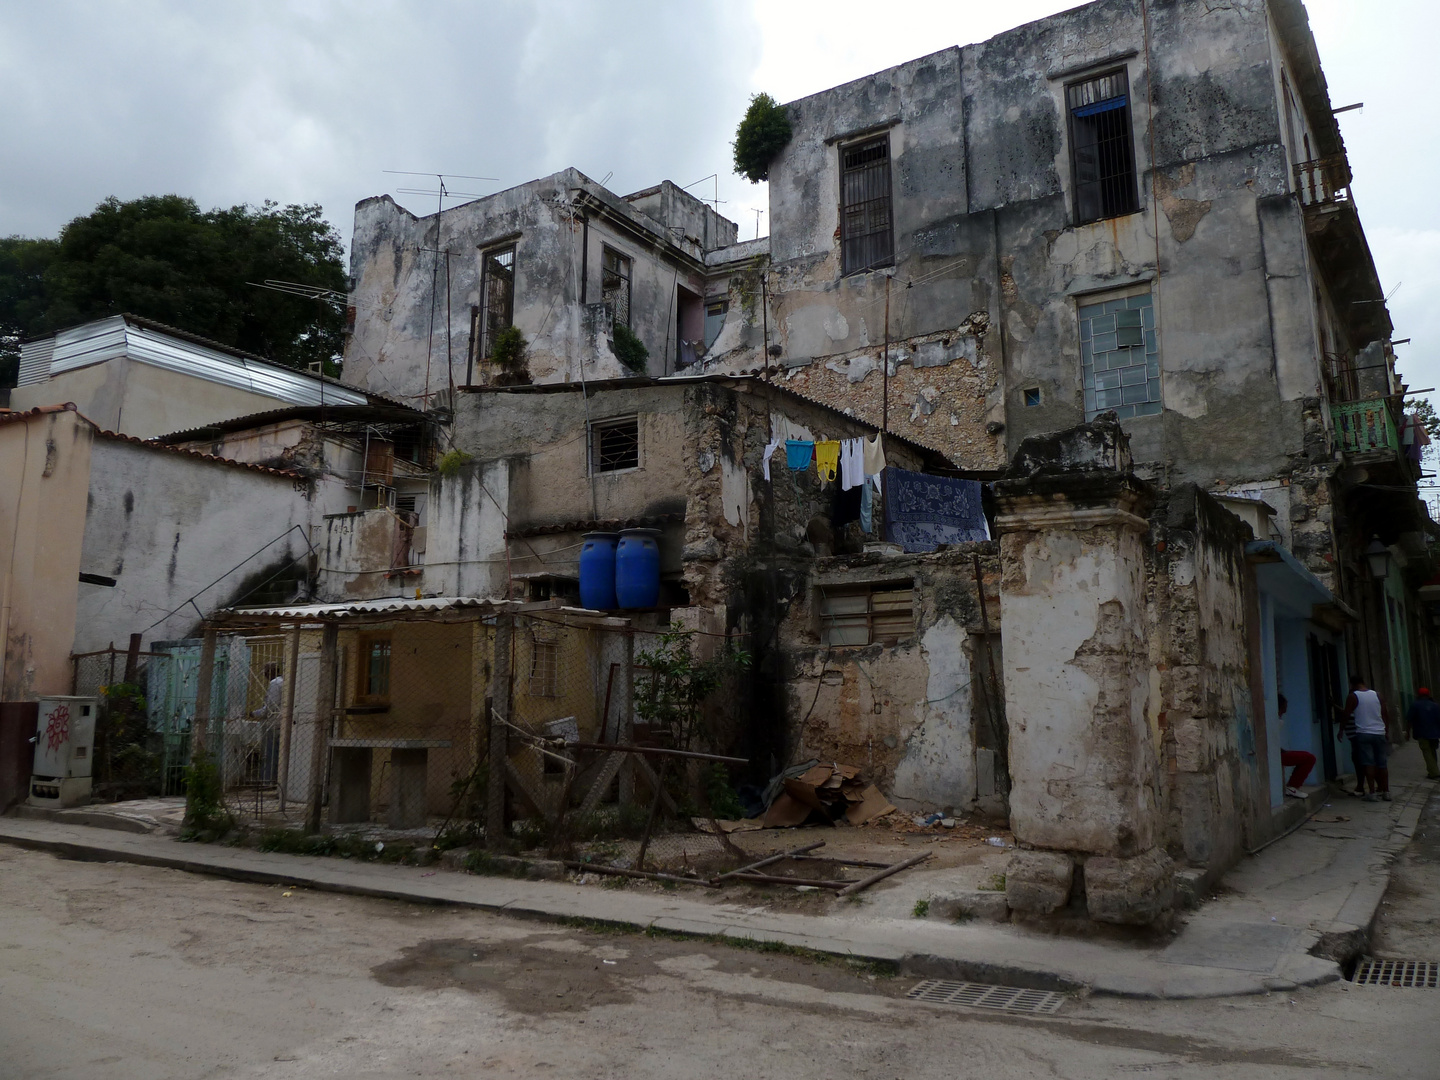 Havanna, die häßliche - Leben in Ruinen